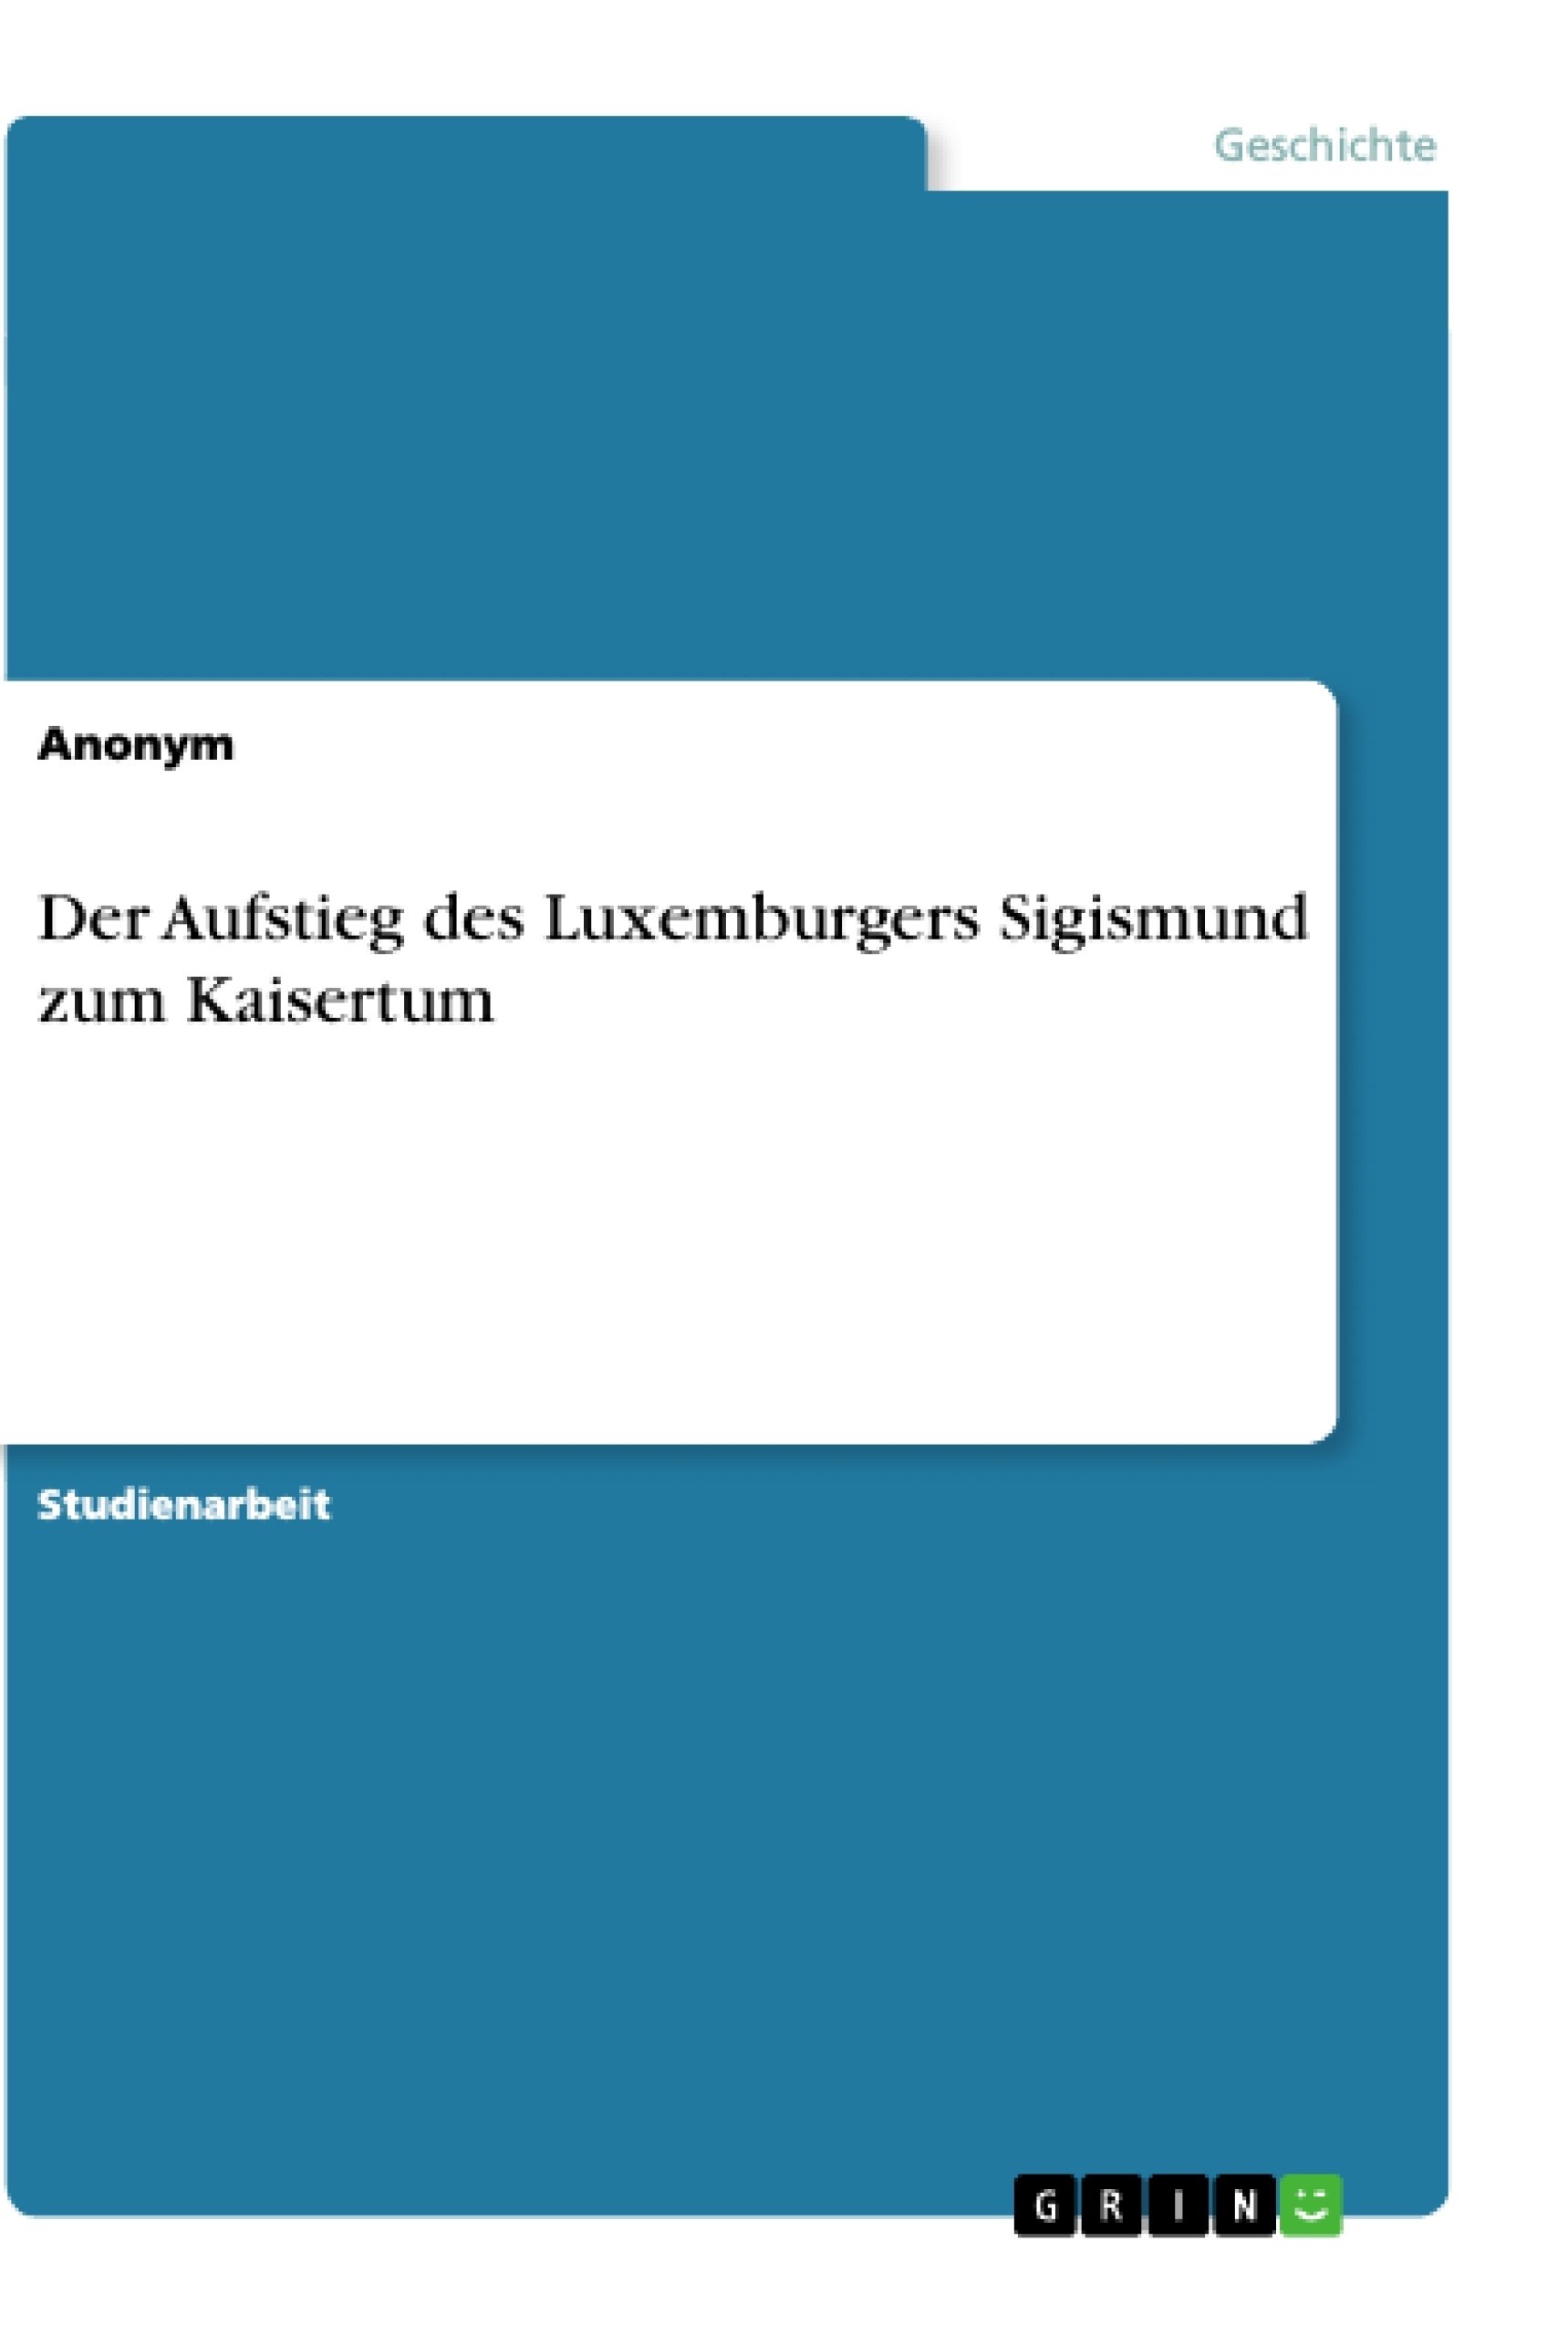 Título: Der Aufstieg des Luxemburgers Sigismund zum Kaisertum